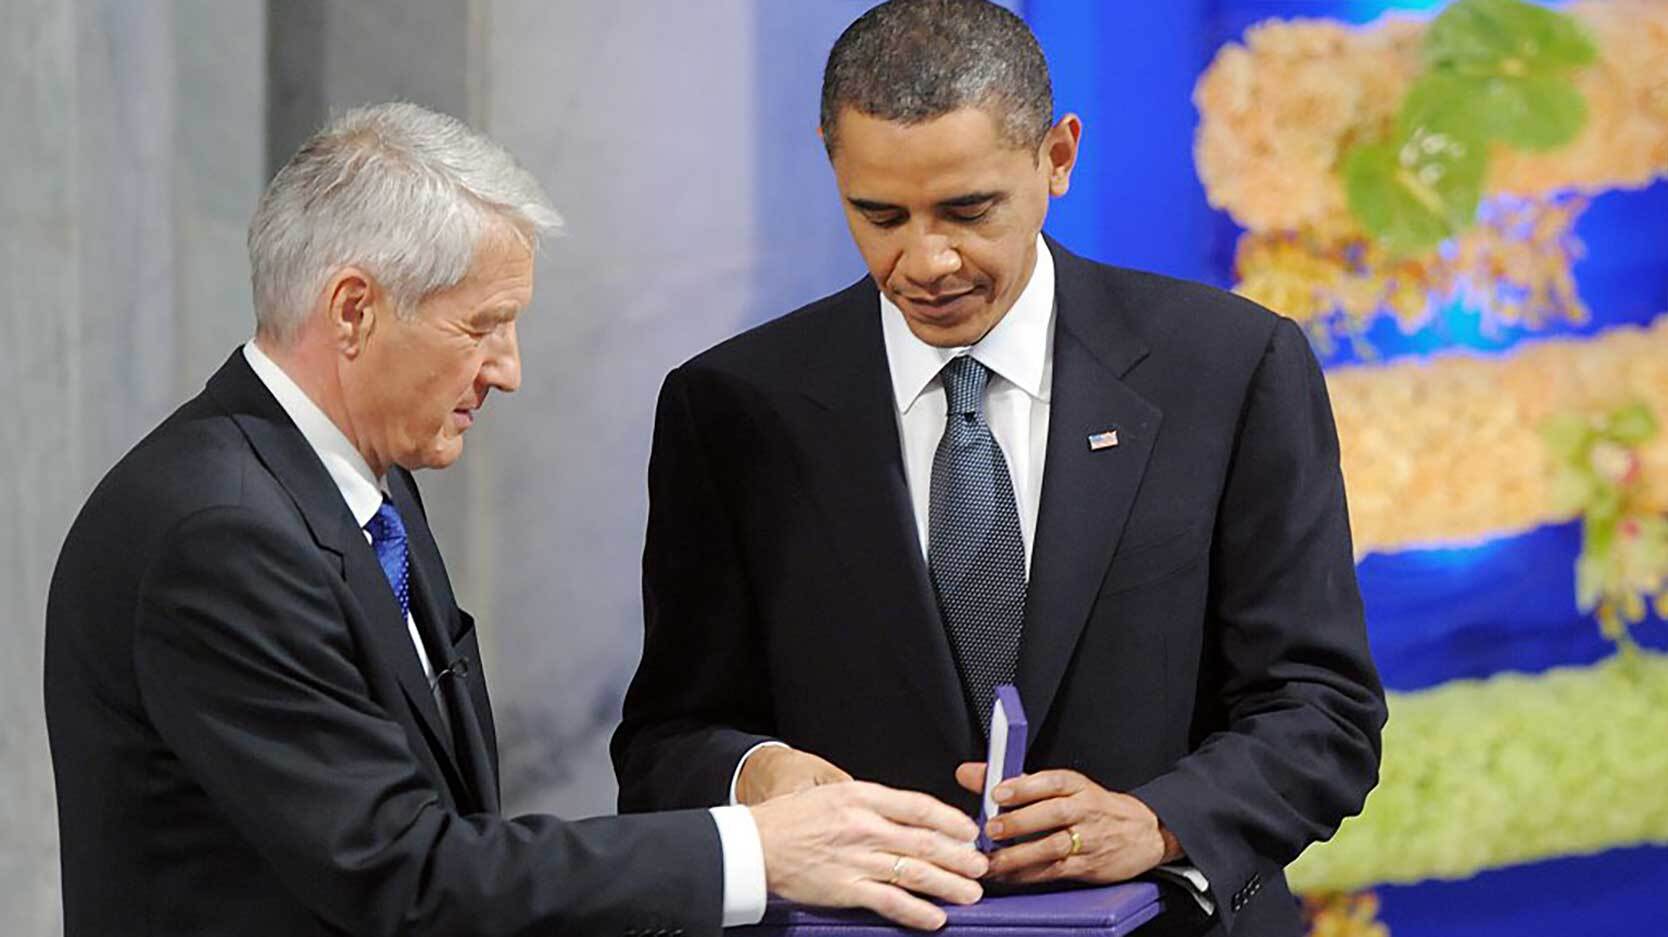 Jagland hands Nobel medal to Barack Obama 2009